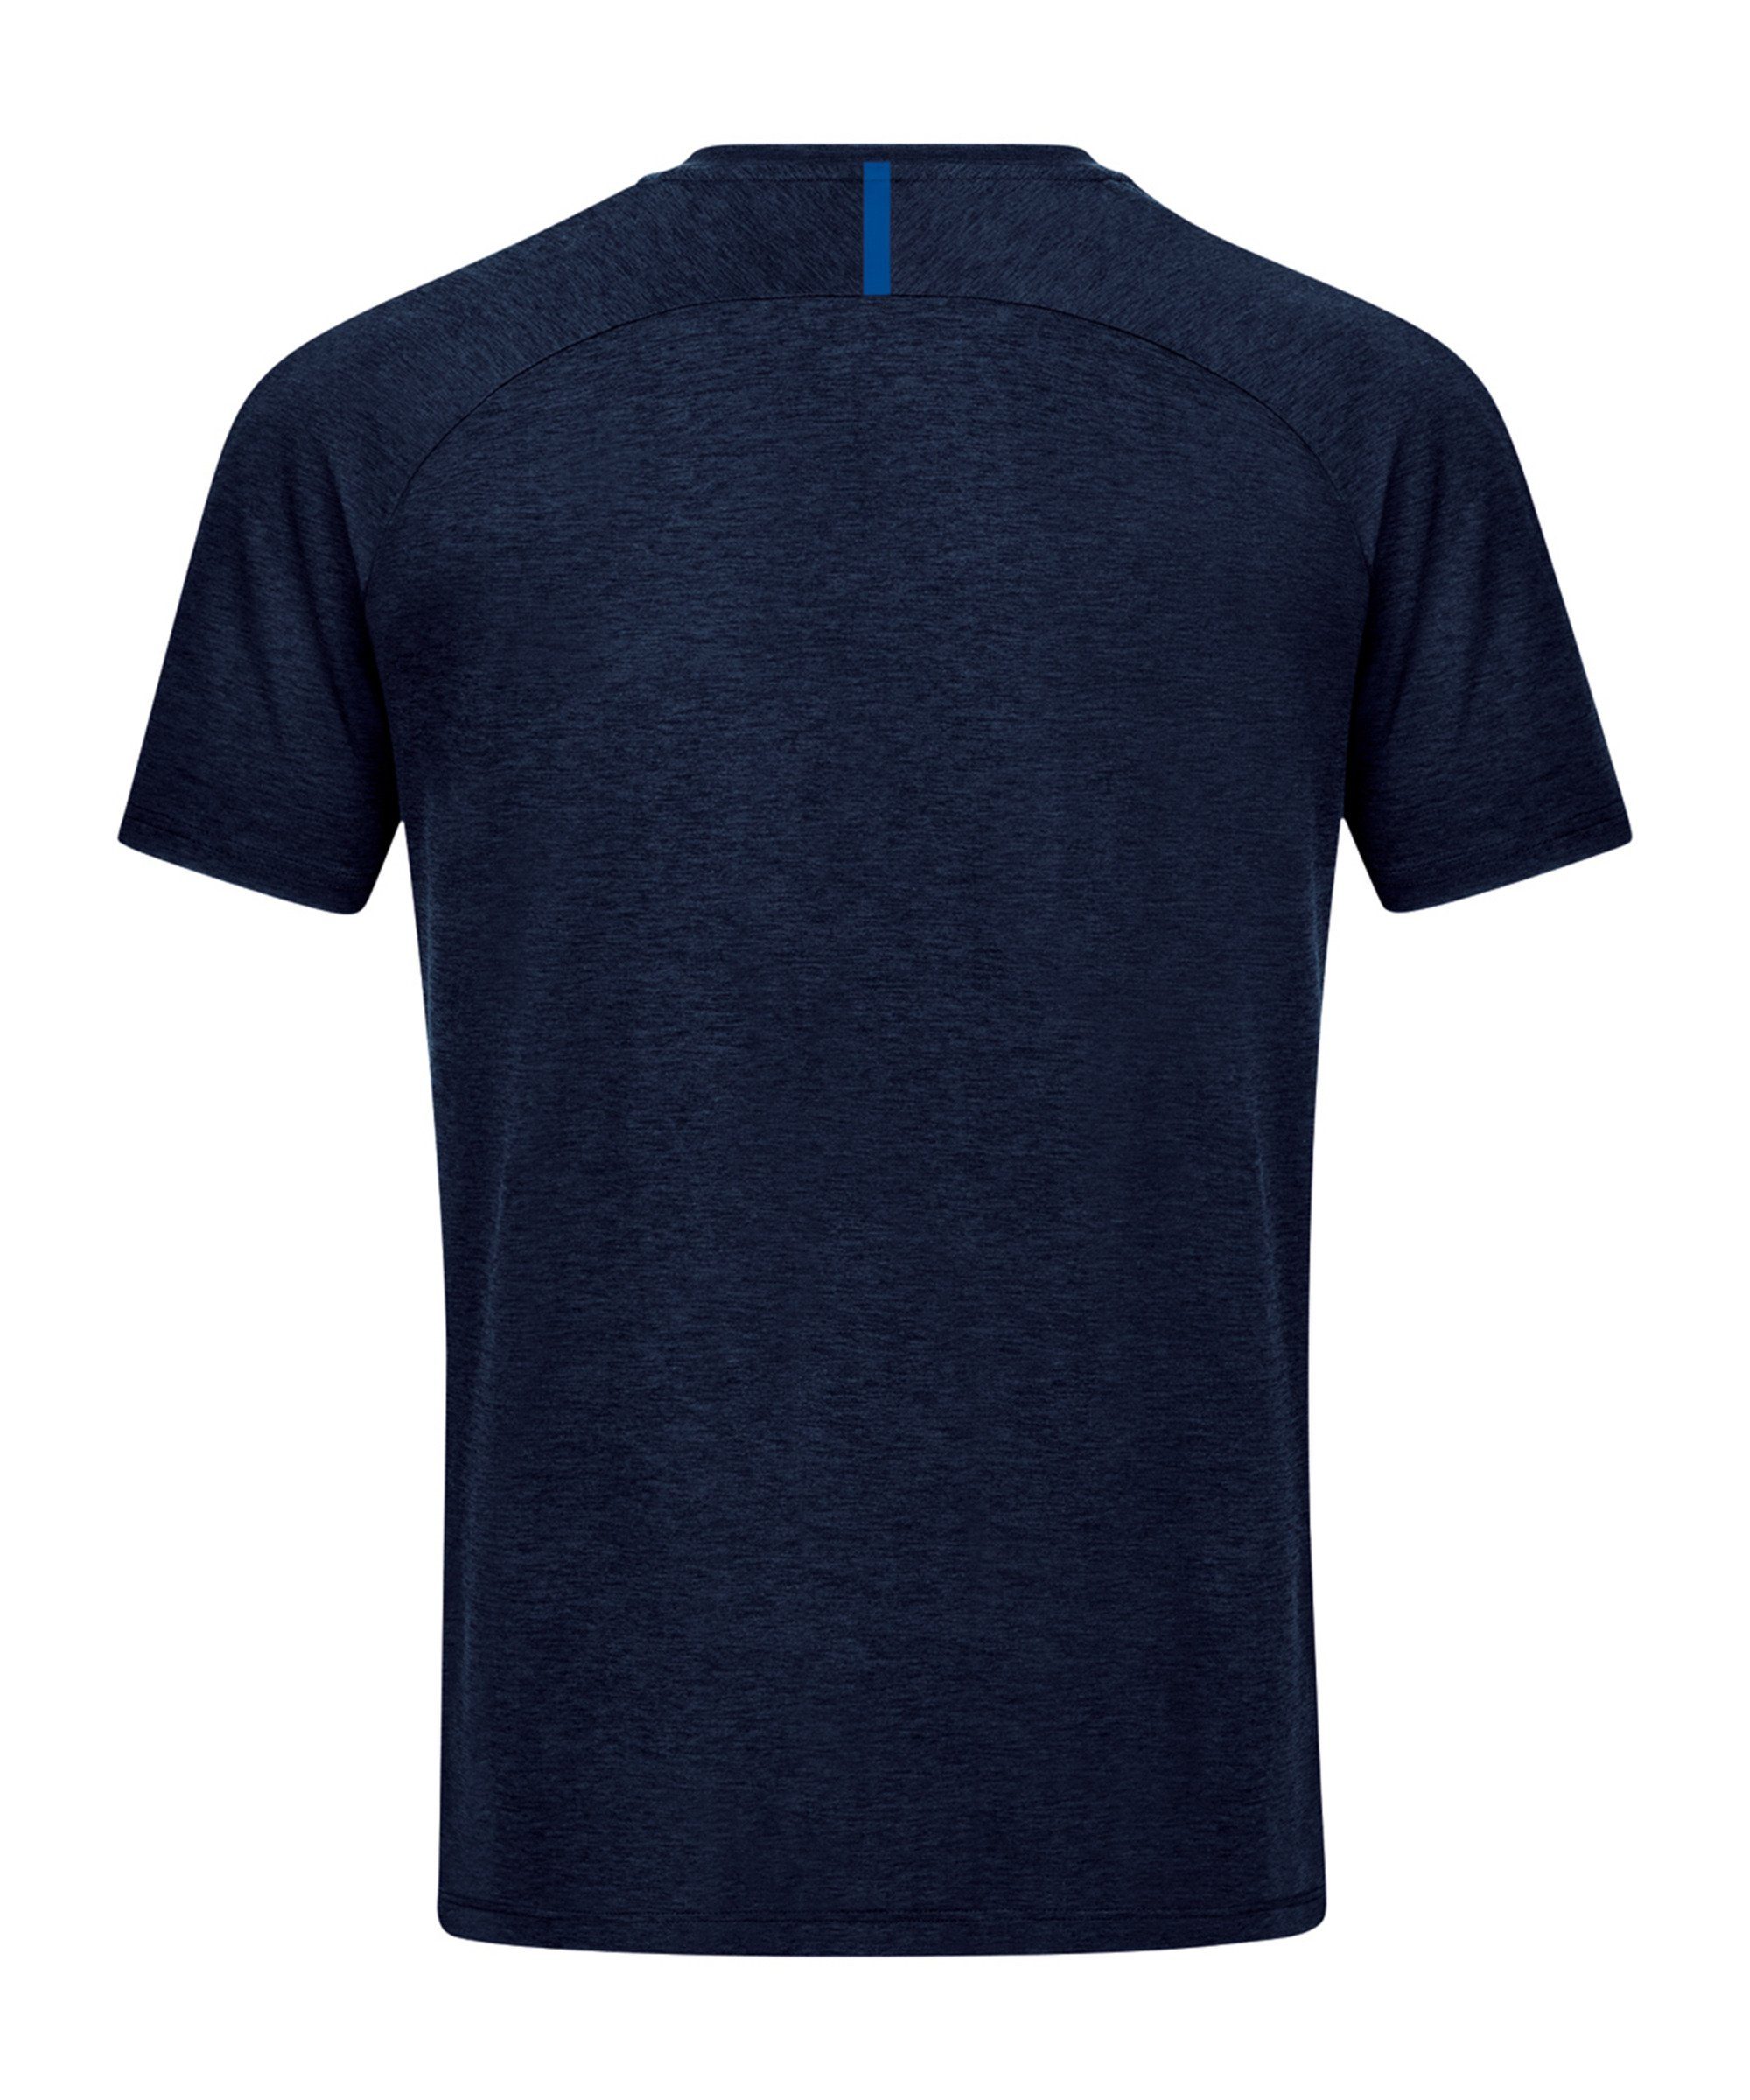 Freizeit Challenge T-Shirt Jako default blaublau T-Shirt